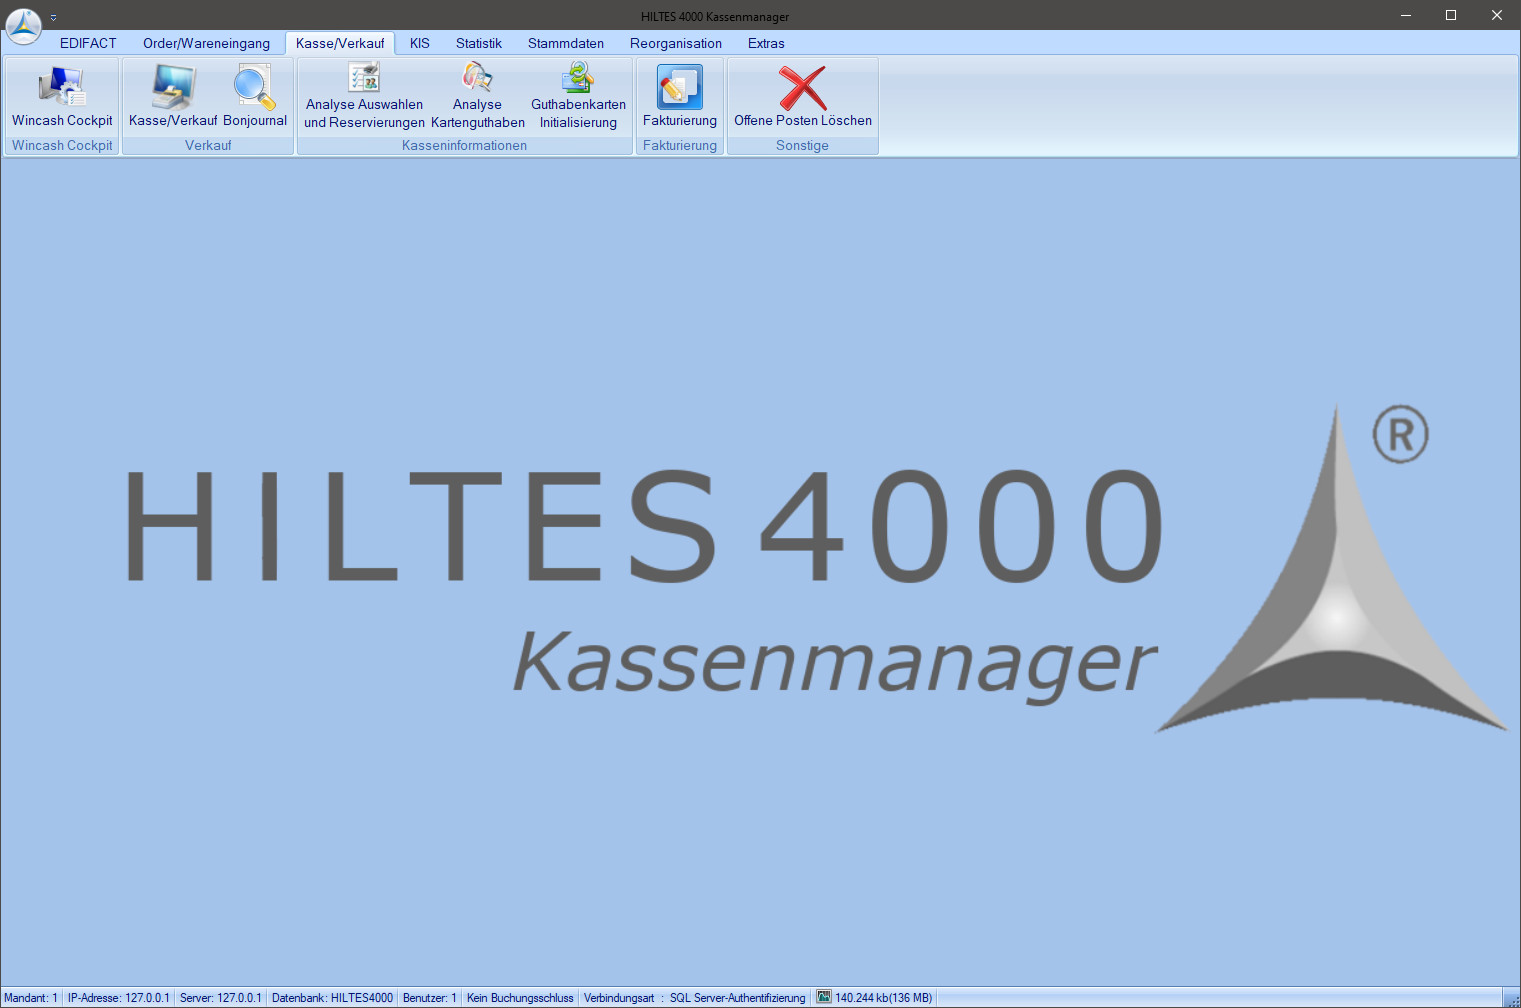 HILTES 4000 Kassenmanager